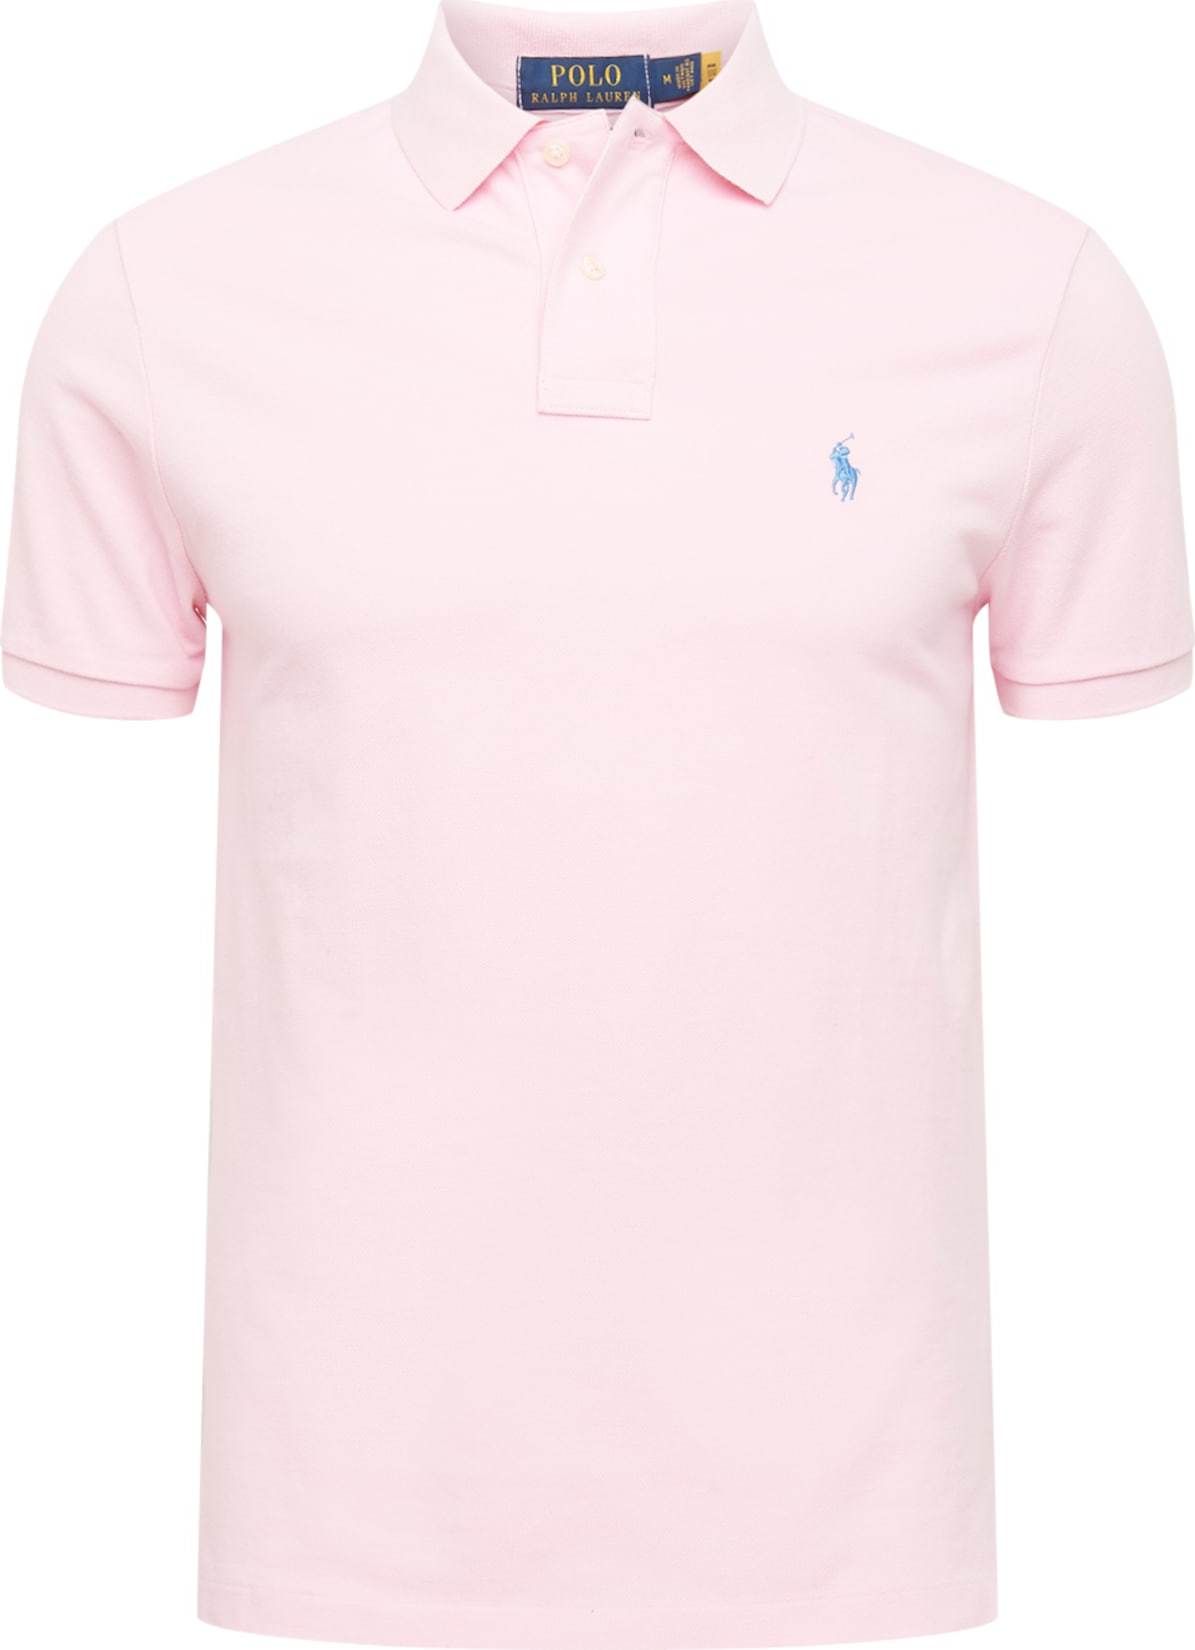 Polo Ralph Lauren Tričko nebeská modř / růžová